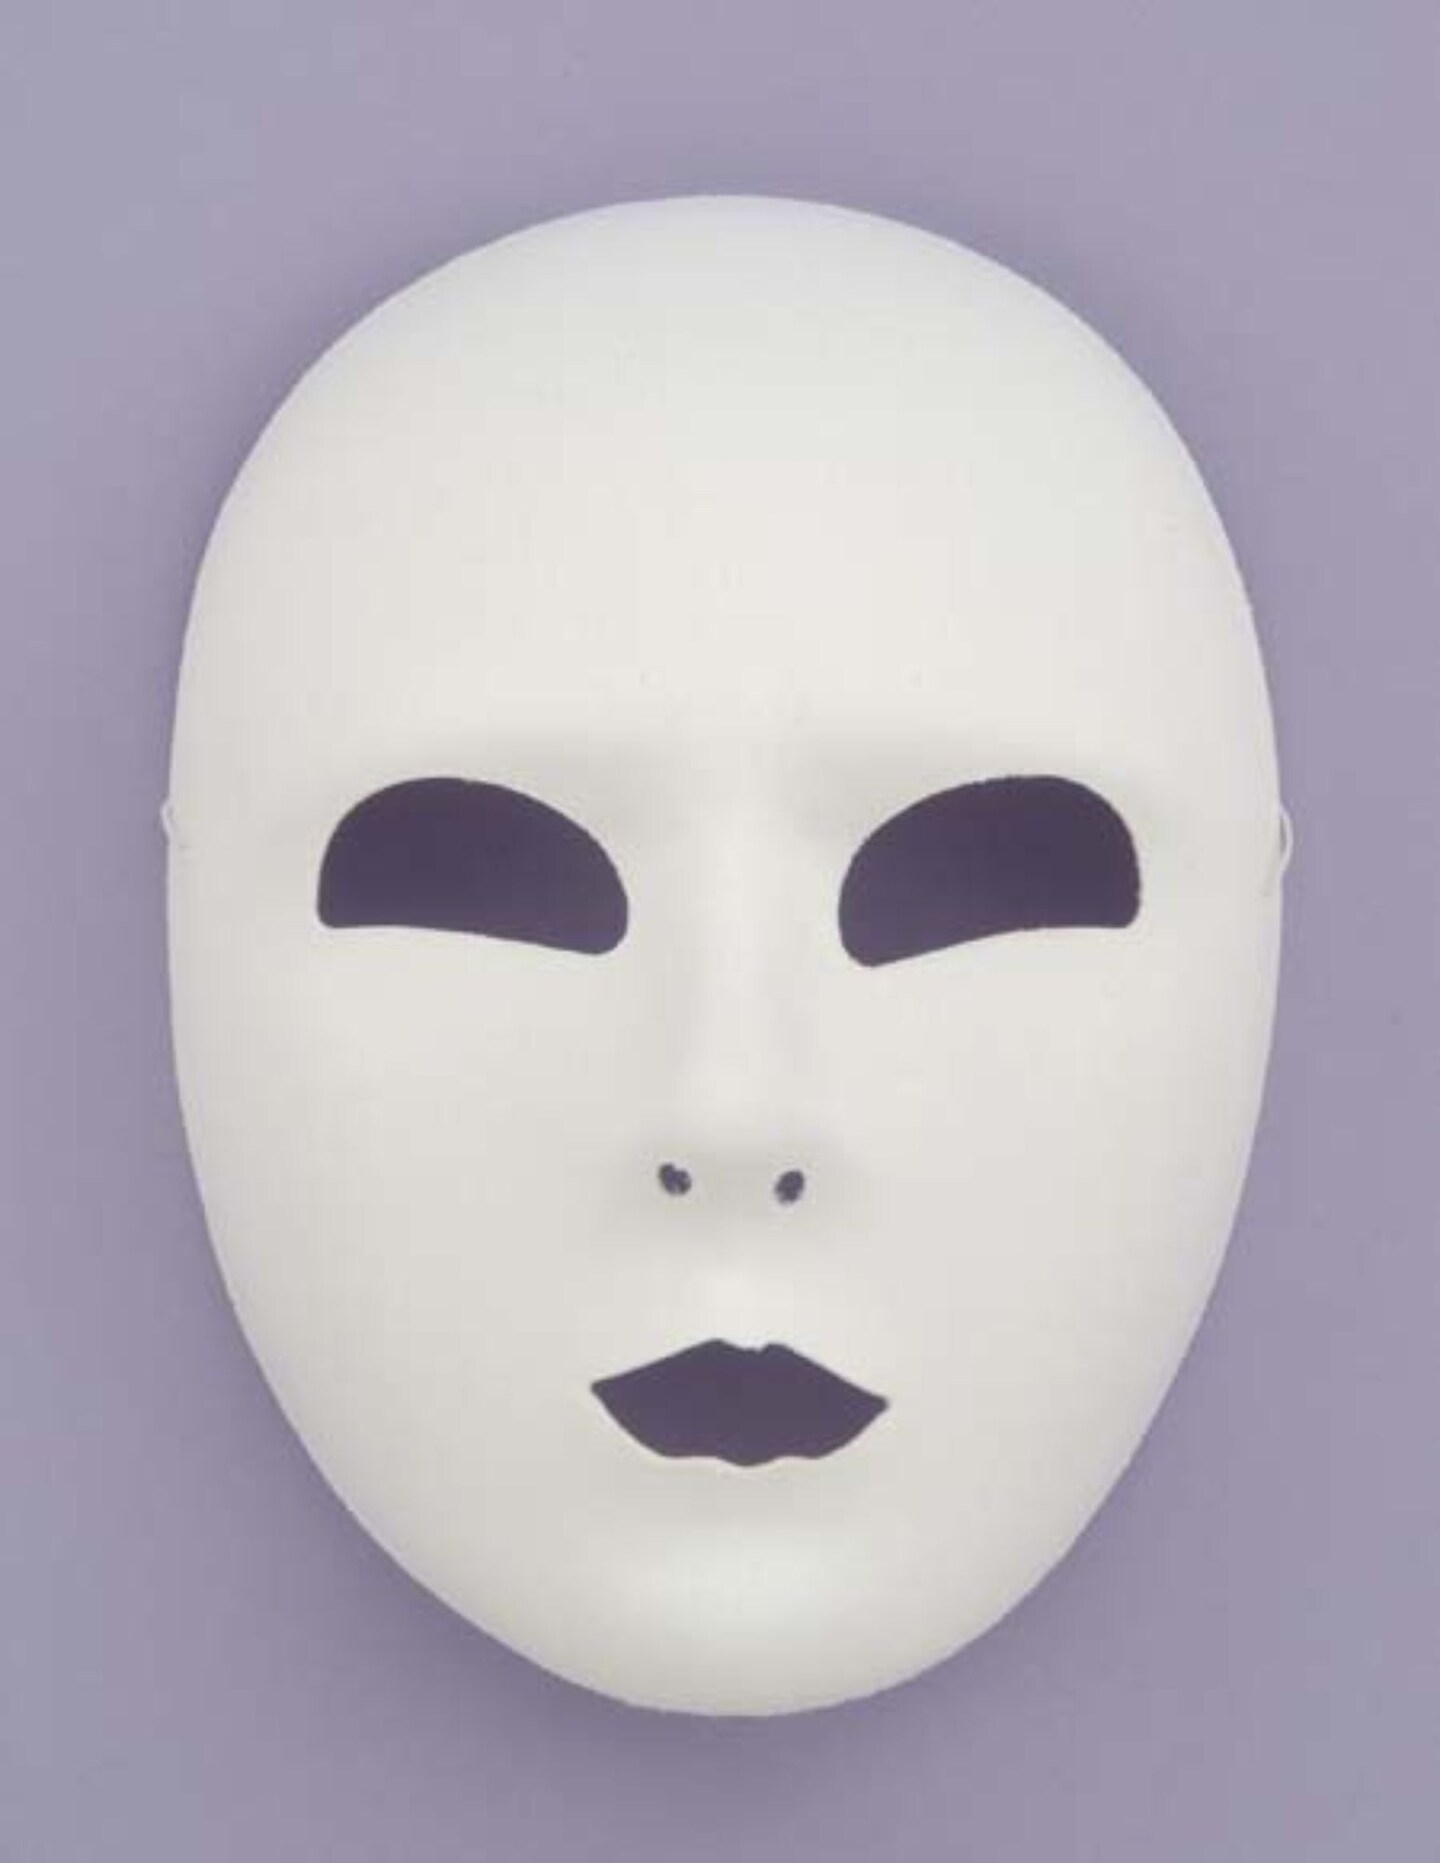 The Costume Center White Full Face Unisex Adult Halloween Mask Costume ...